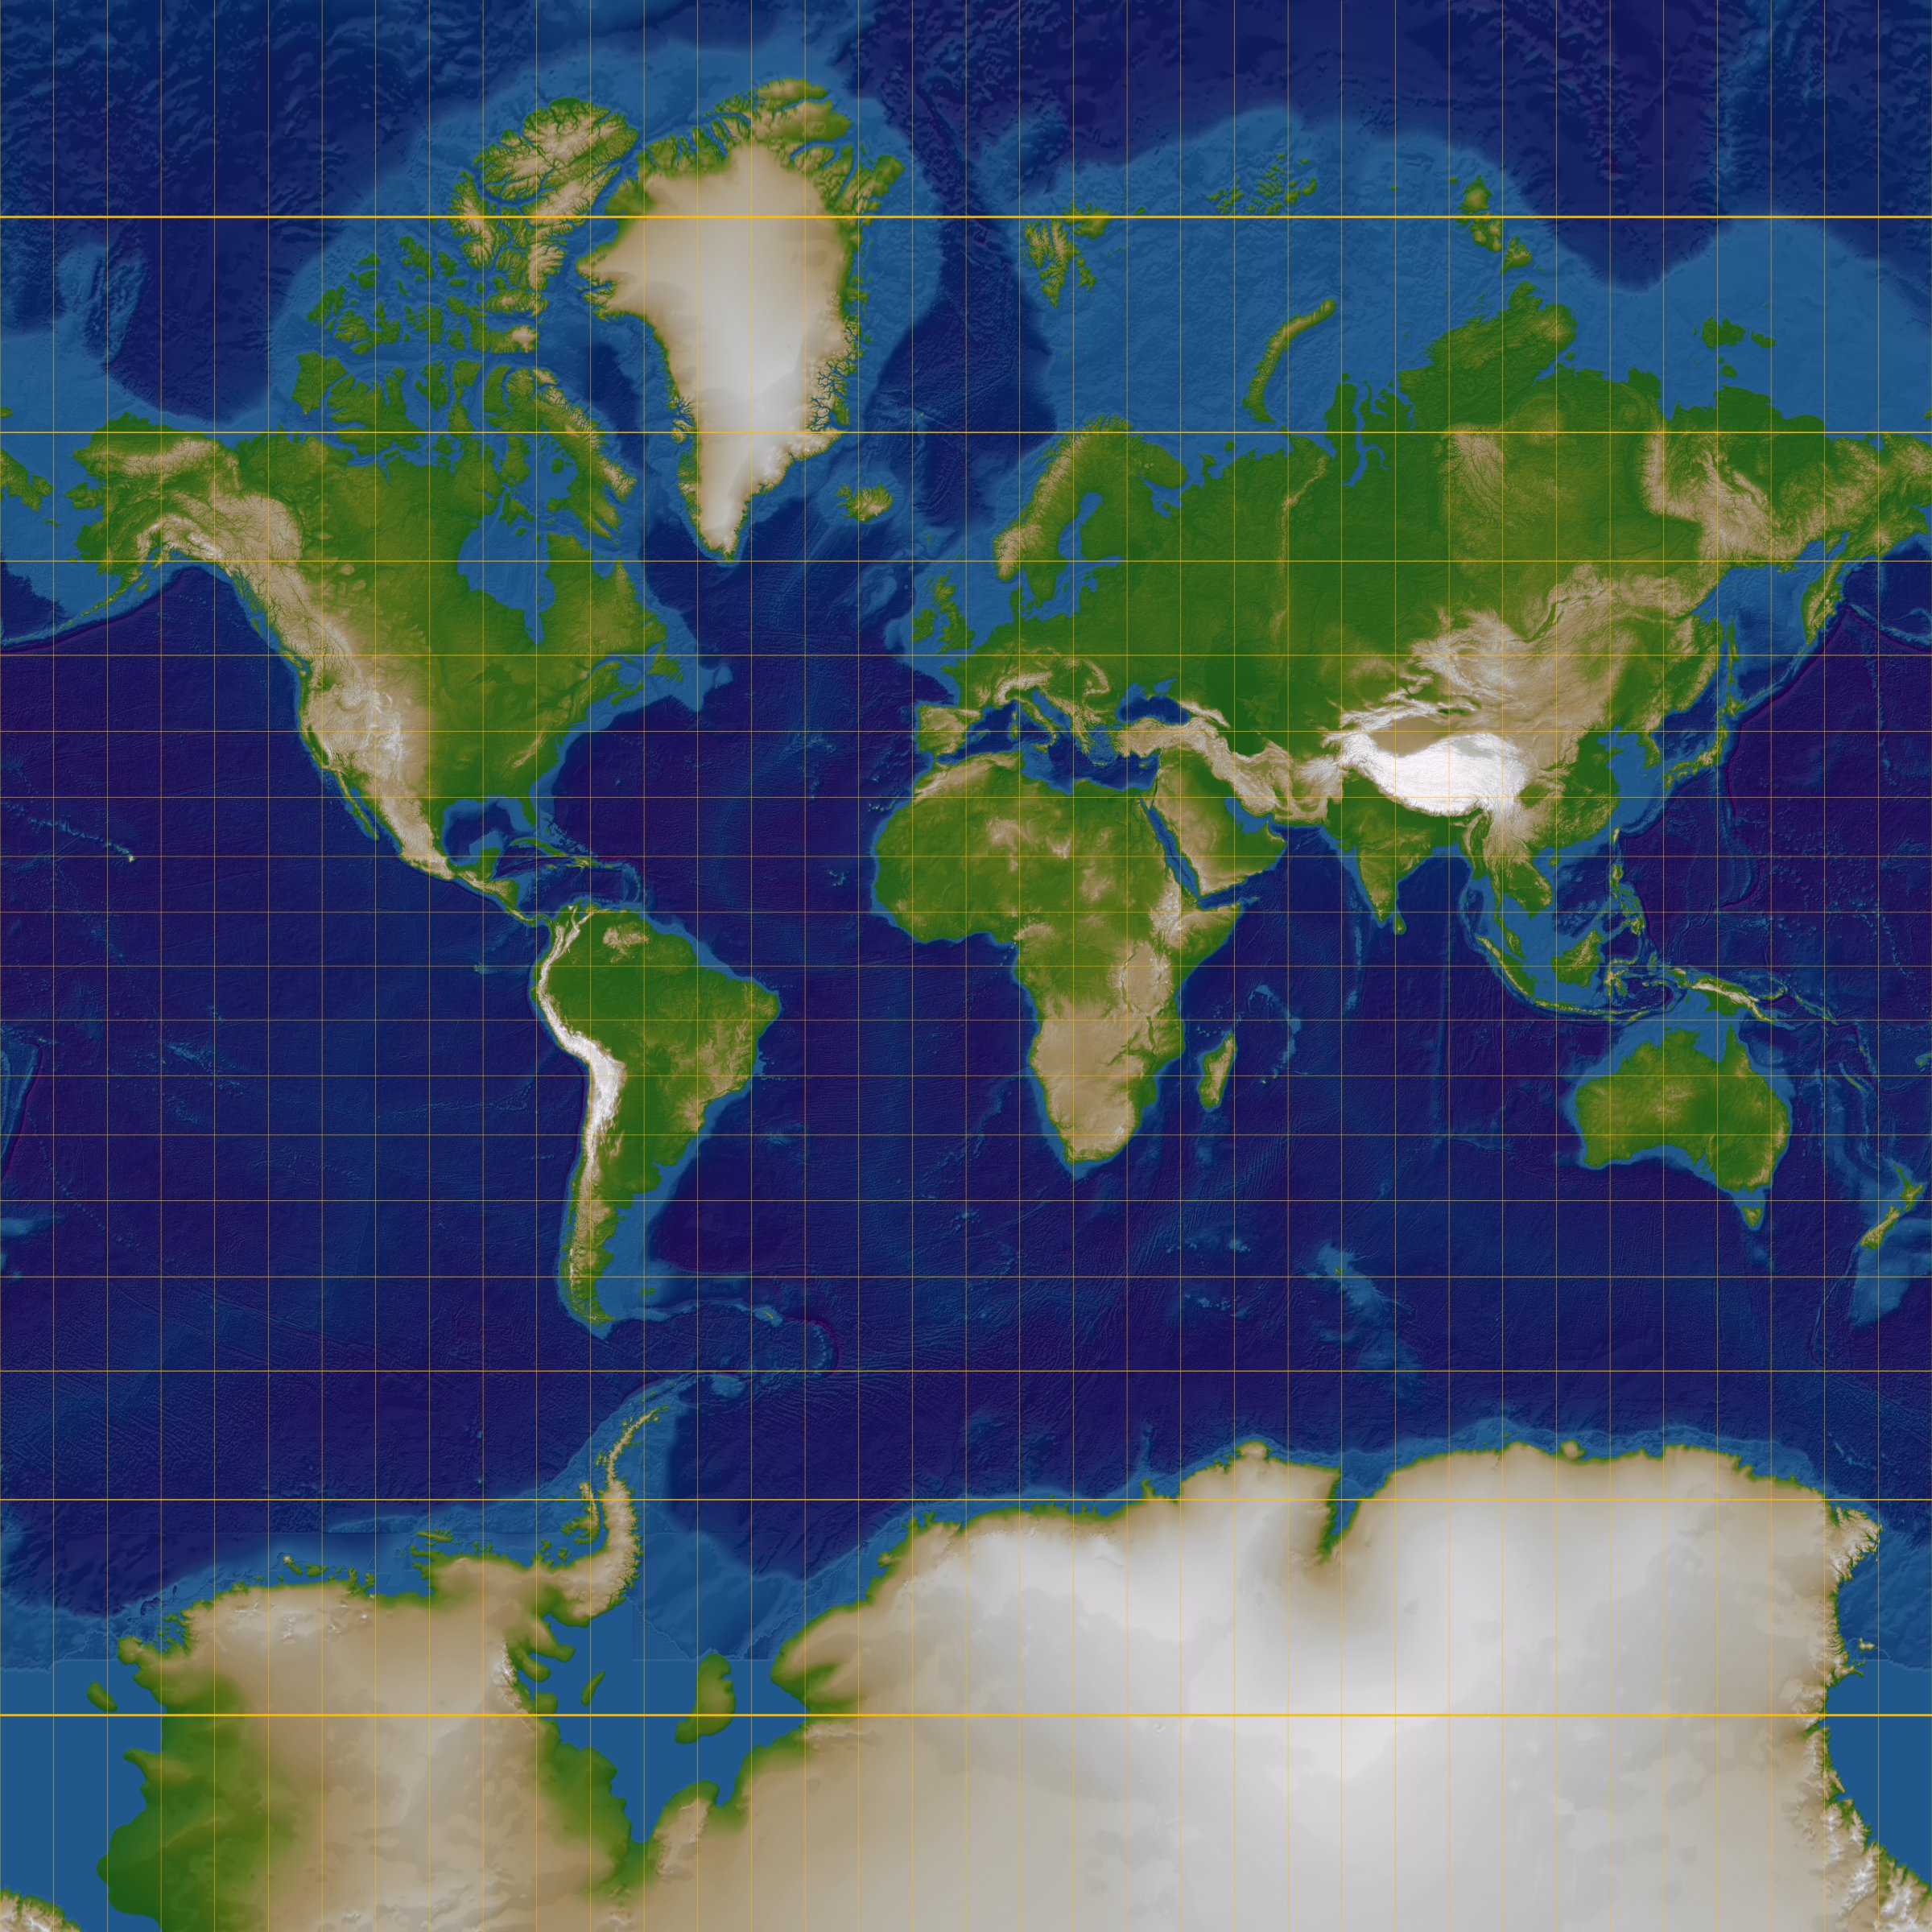 File:Normal Mercator map 85deg.jpg - Wikimedia Commons